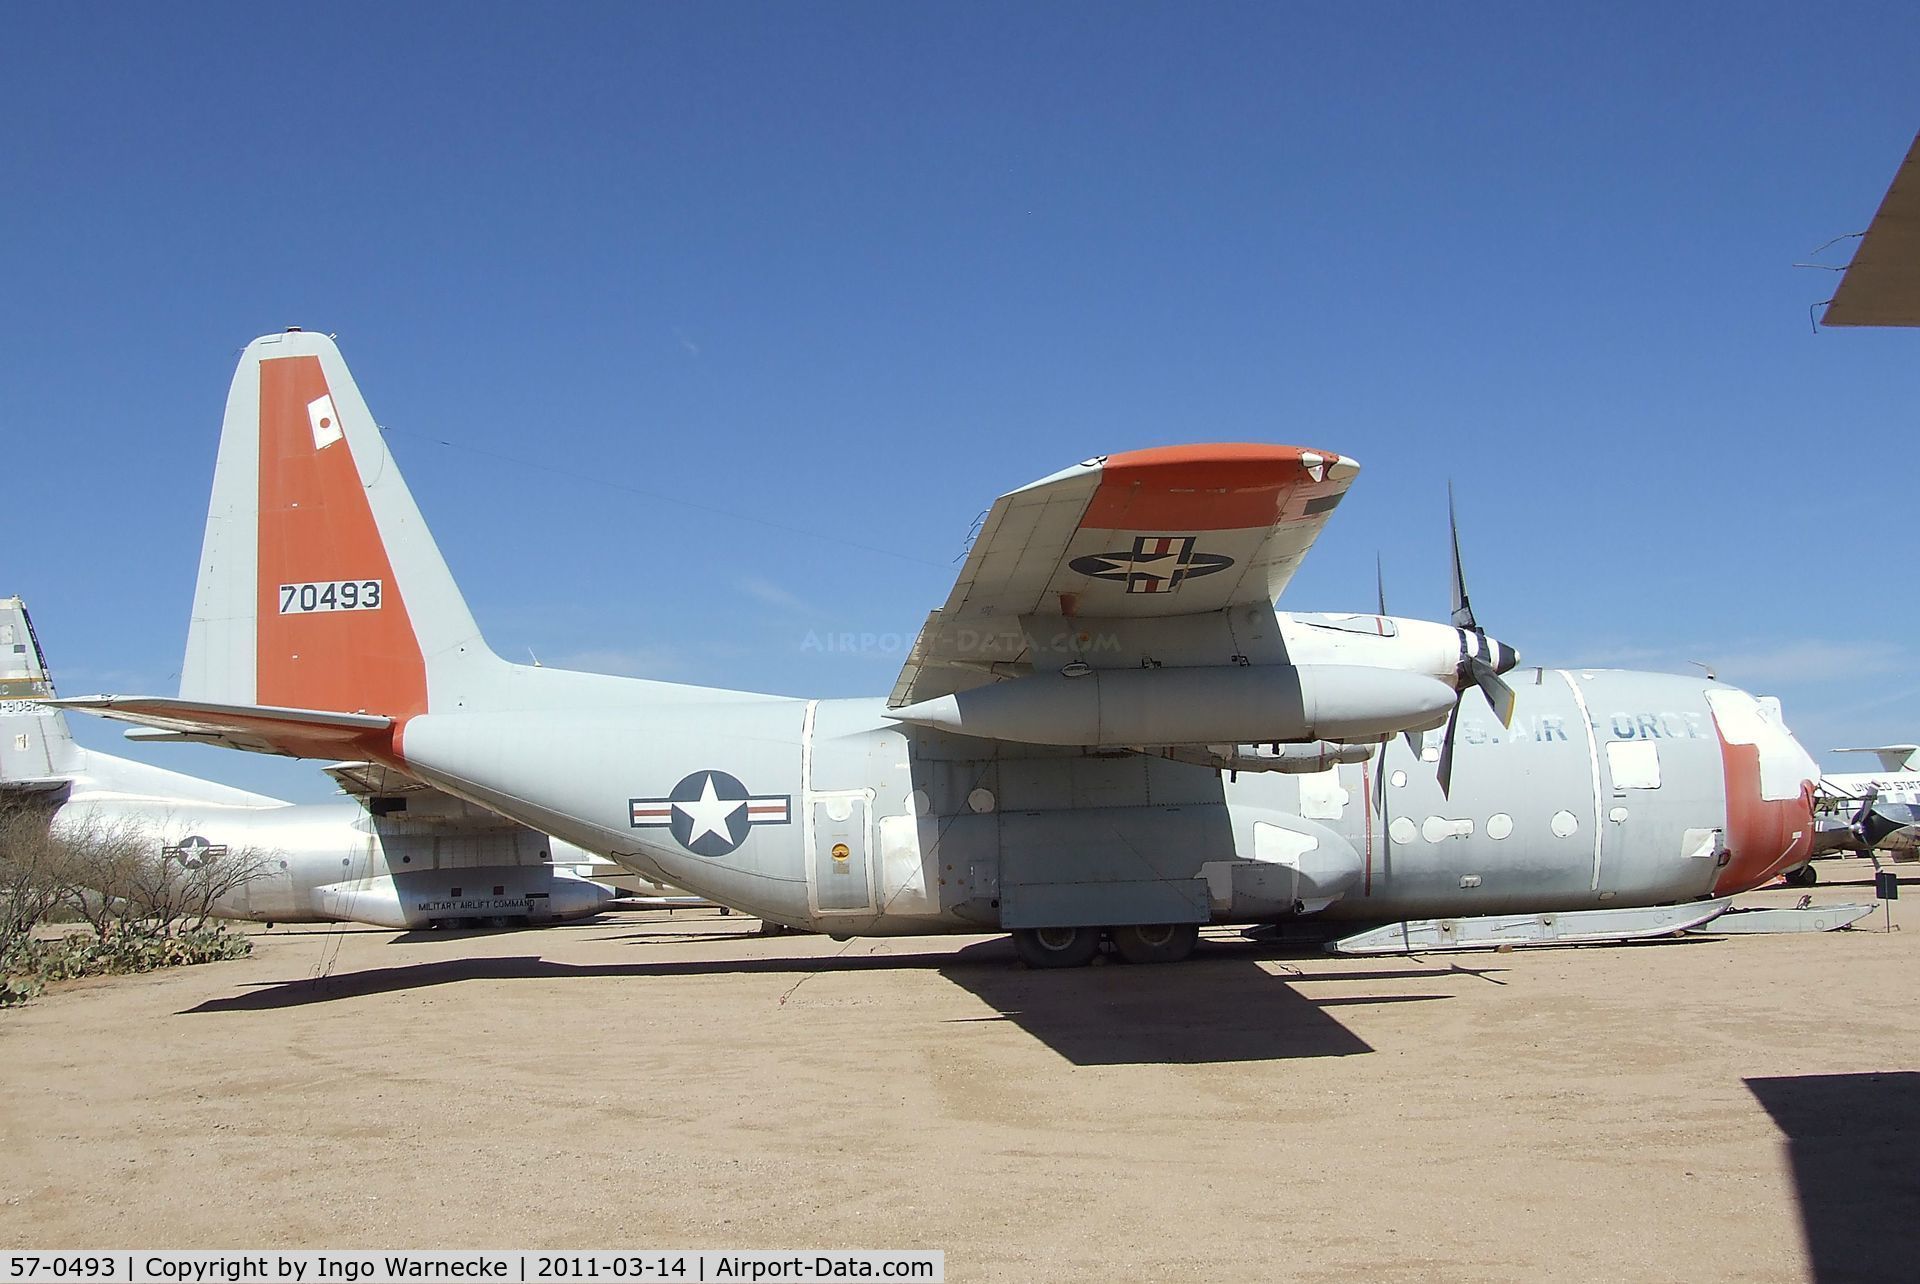 57-0493, 1957 Lockheed C-130D Hercules C/N 182-3200, Lockheed C-130D Hercules at the Pima Air & Space Museum, Tucson AZ